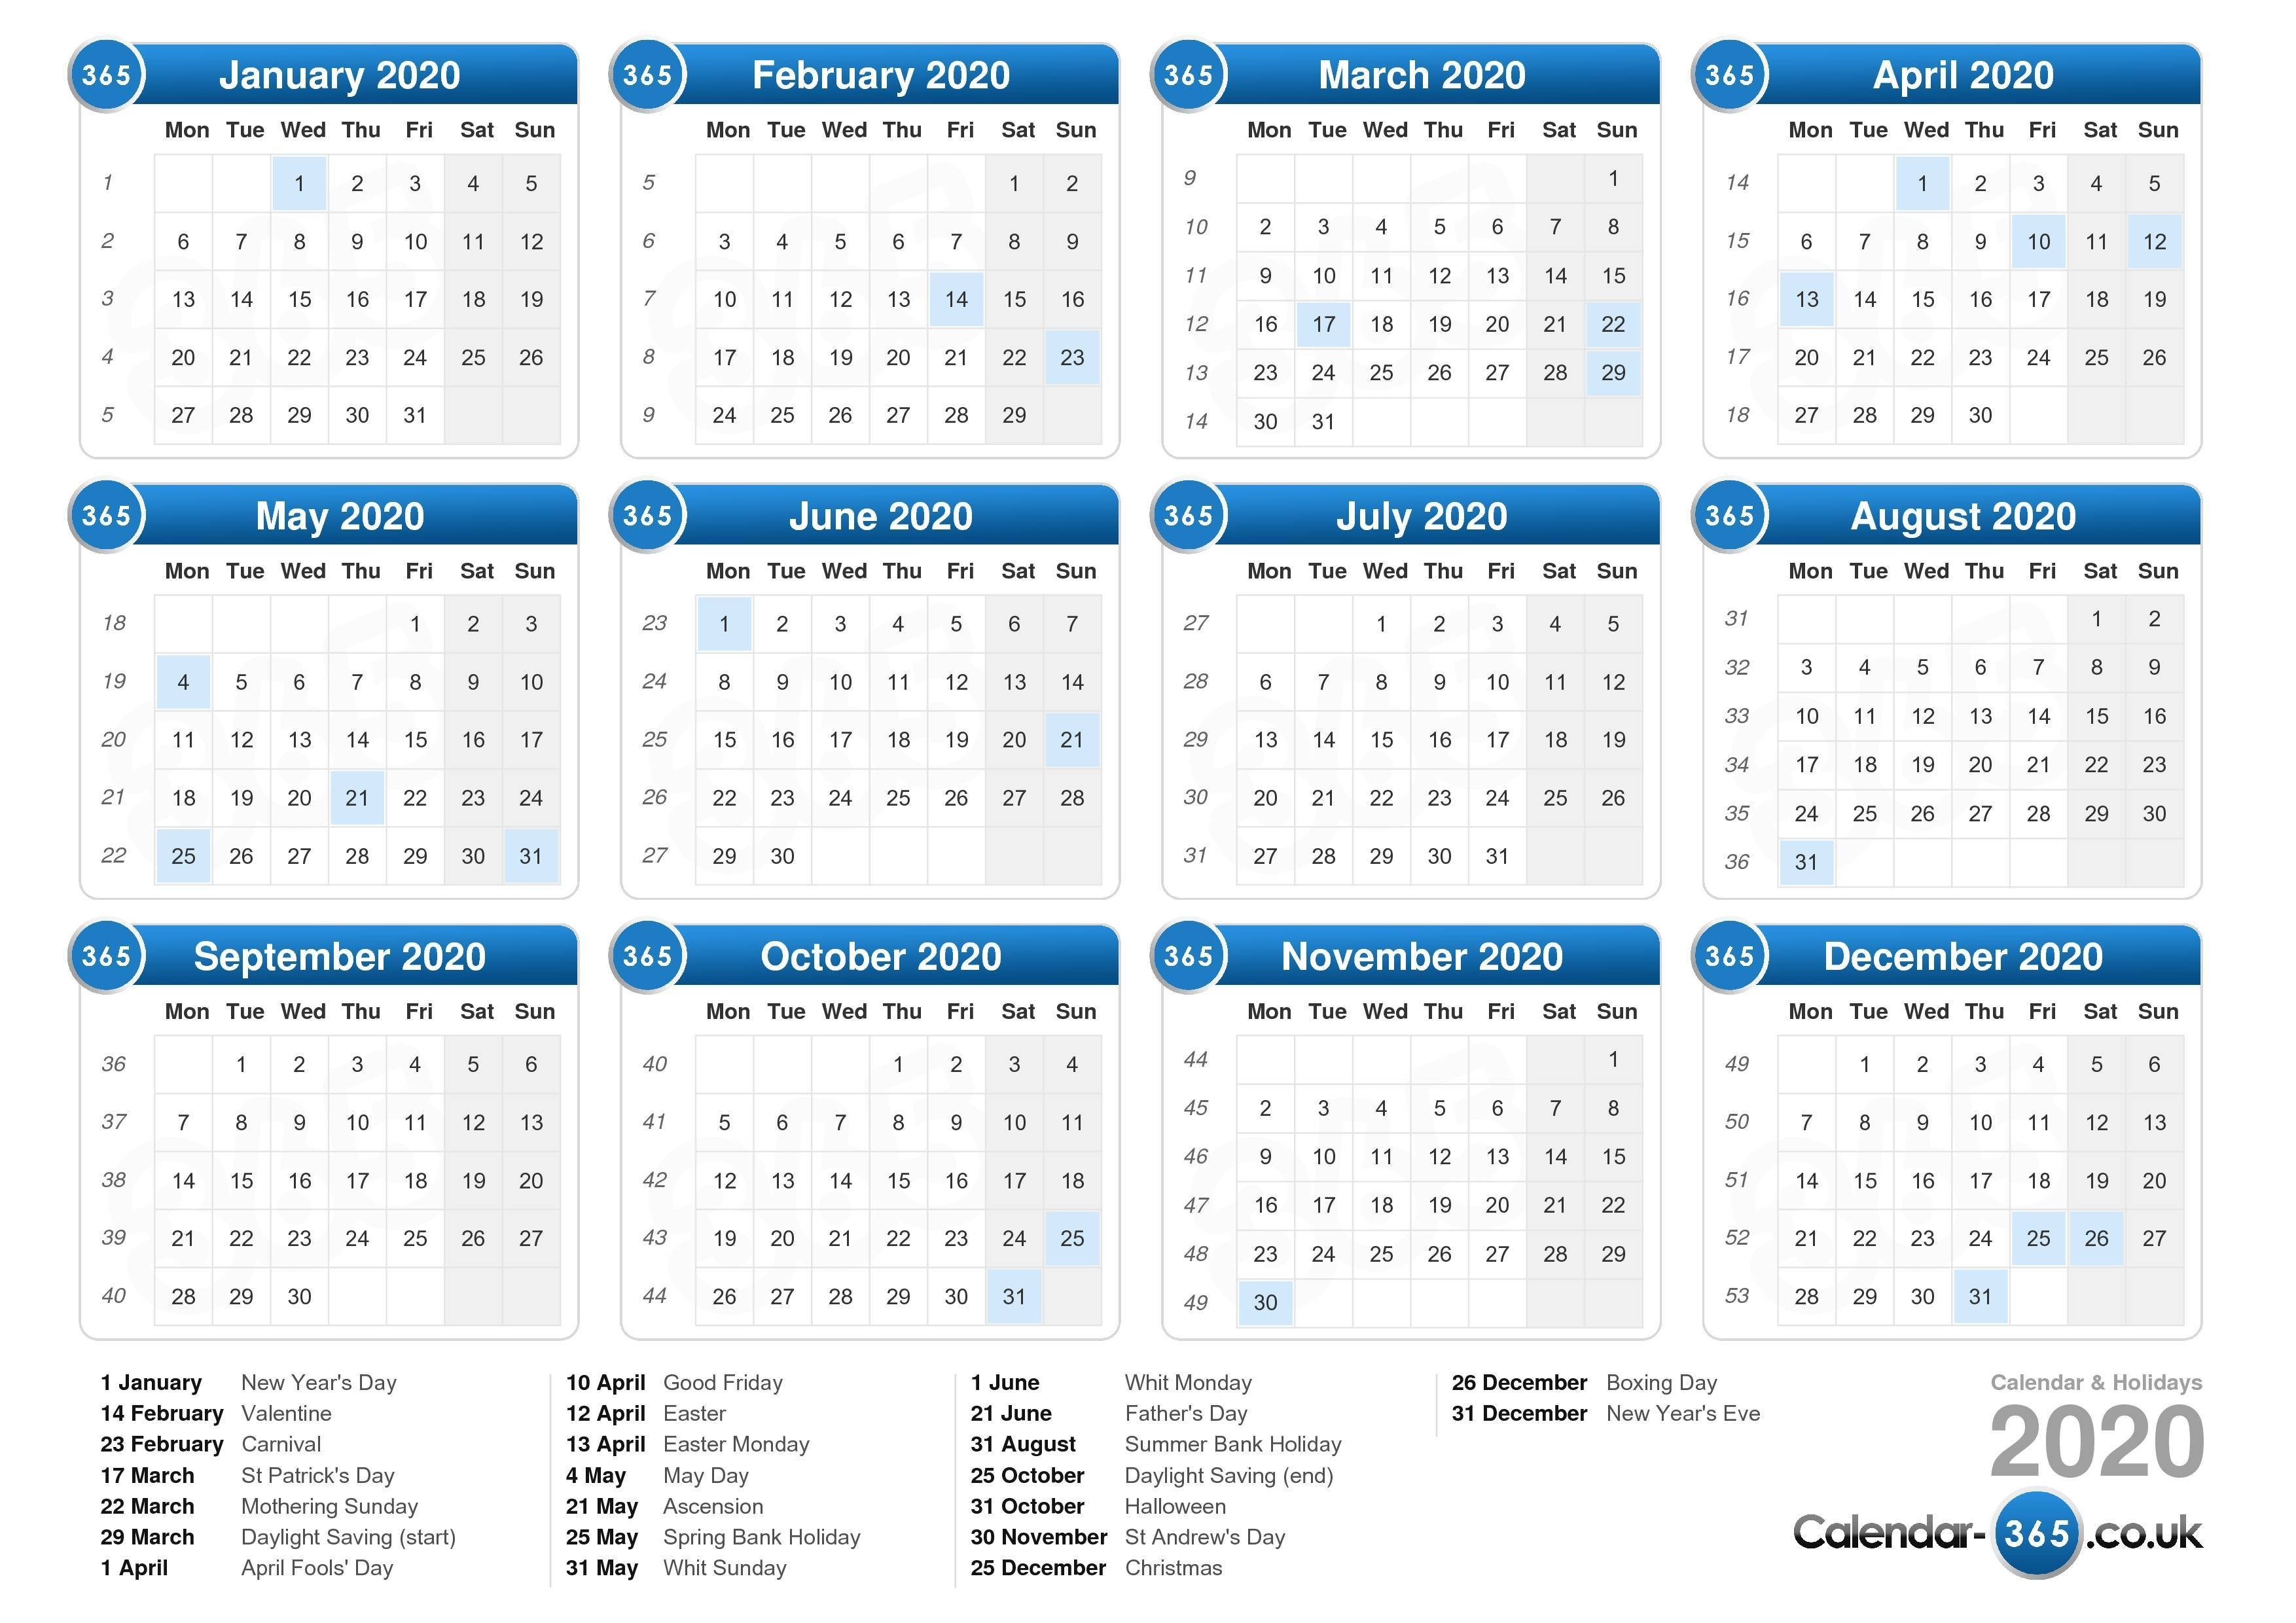 Calendar 2020-2020 Calendar Including Bank Holidays